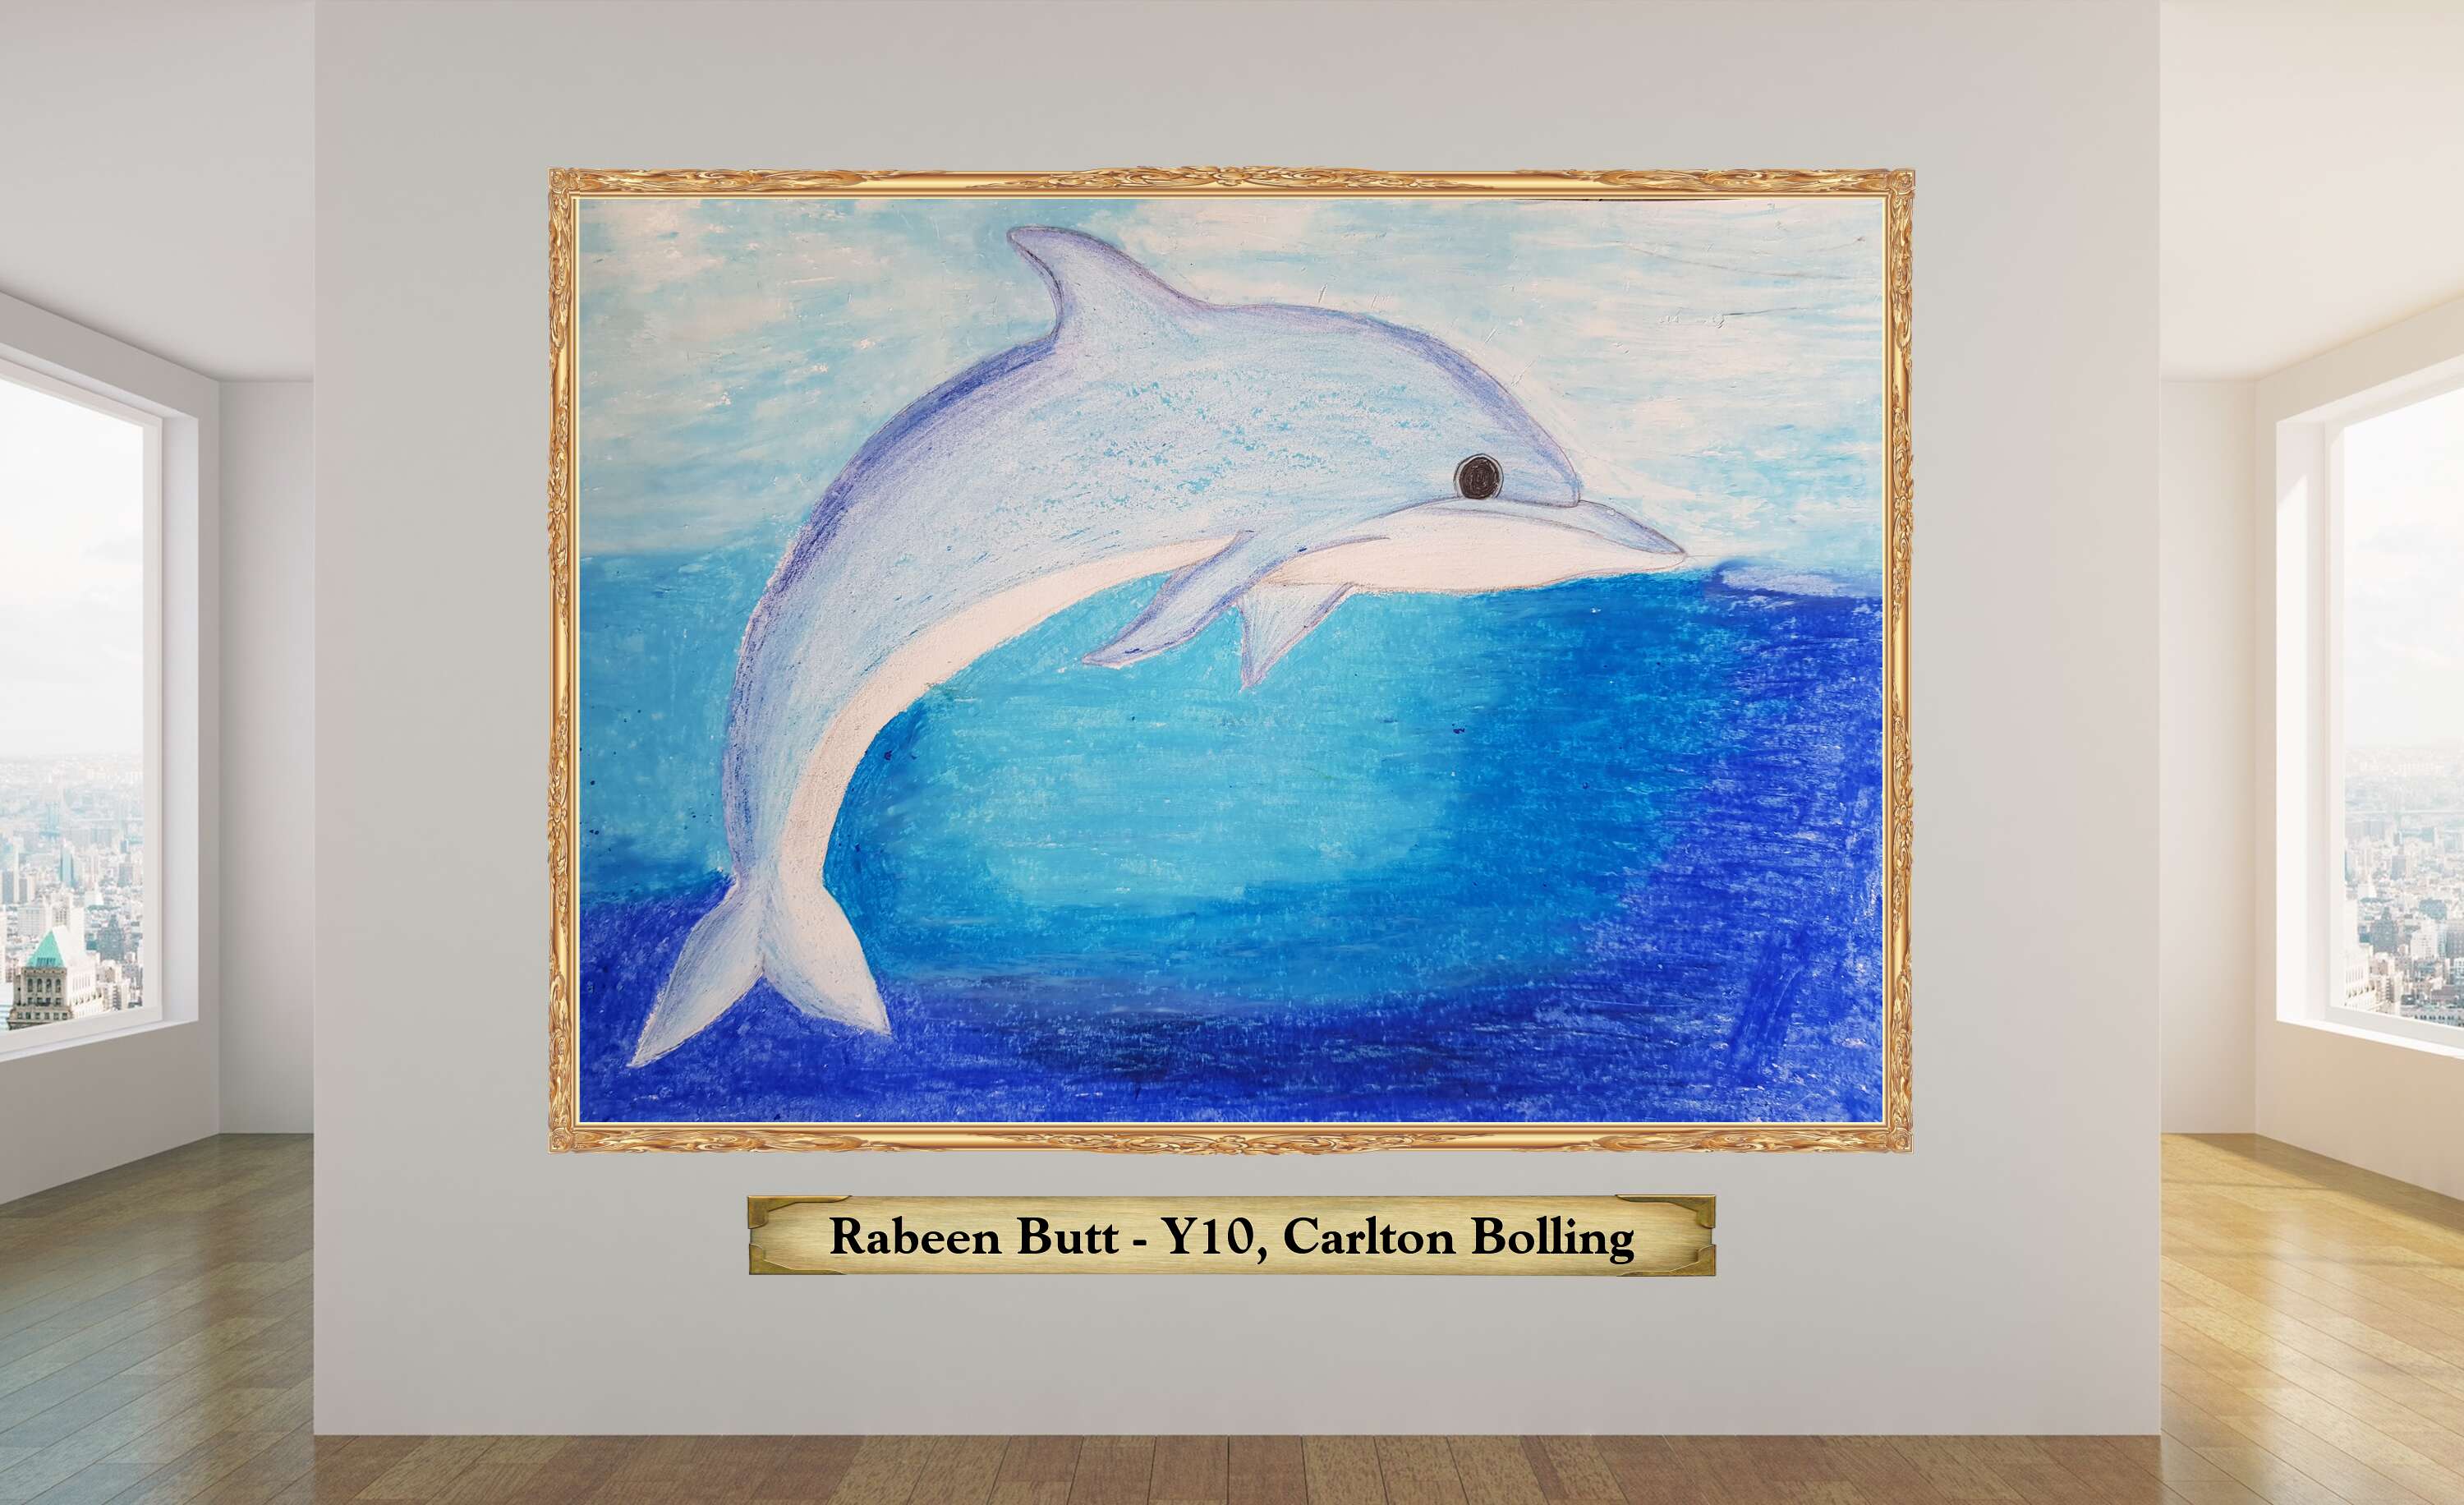 Rabeen Butt - Y10, Carlton Bolling